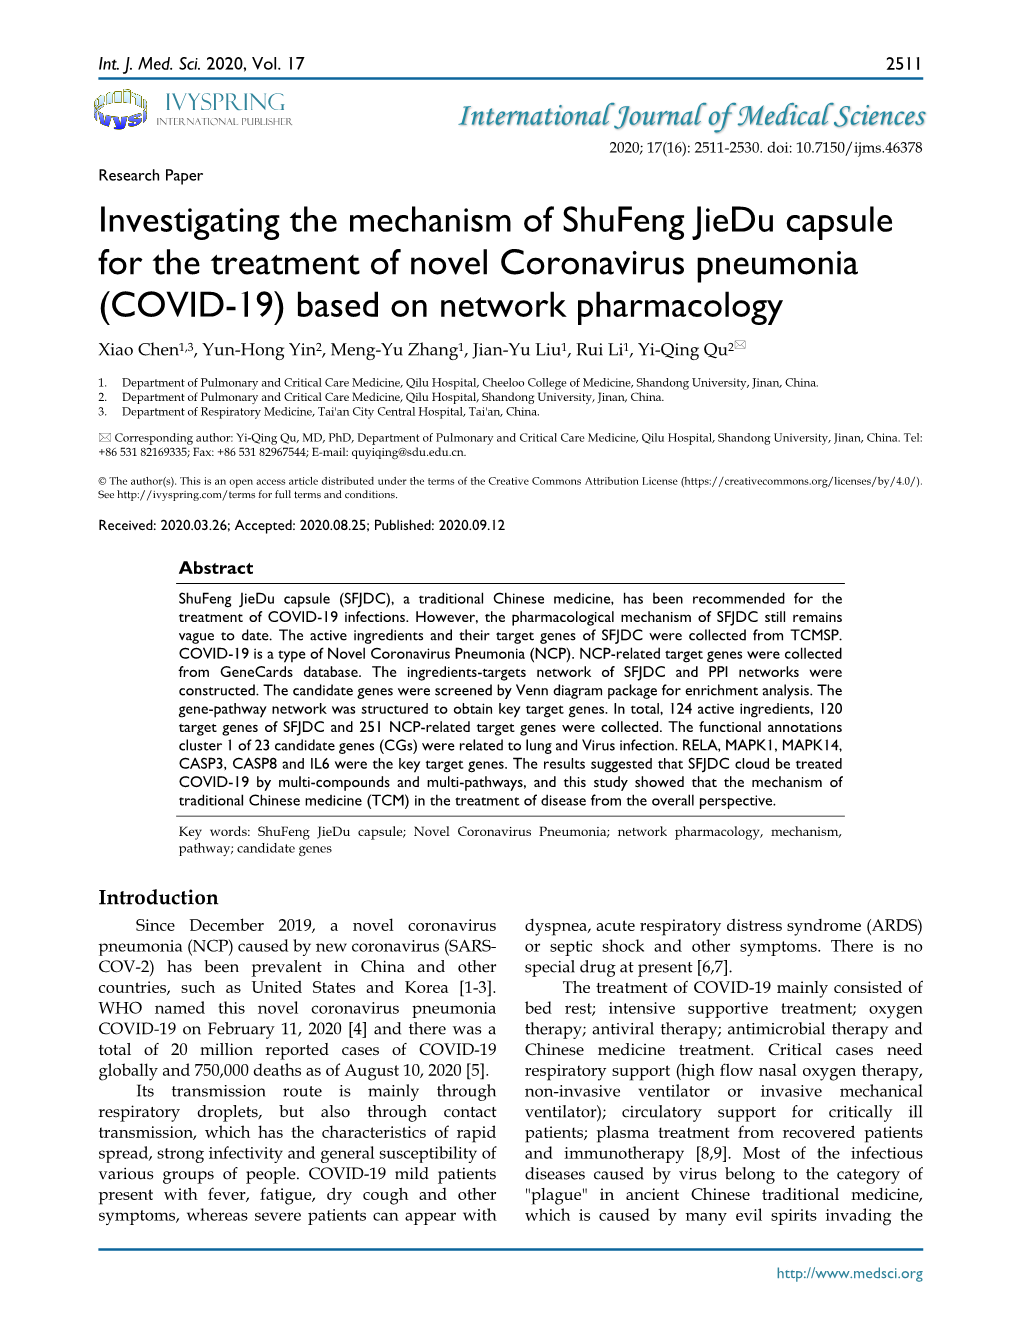 COVID-19) Based on Network Pharmacology Xiao Chen1,3, Yun-Hong Yin2, Meng-Yu Zhang1, Jian-Yu Liu1, Rui Li1, Yi-Qing Qu2